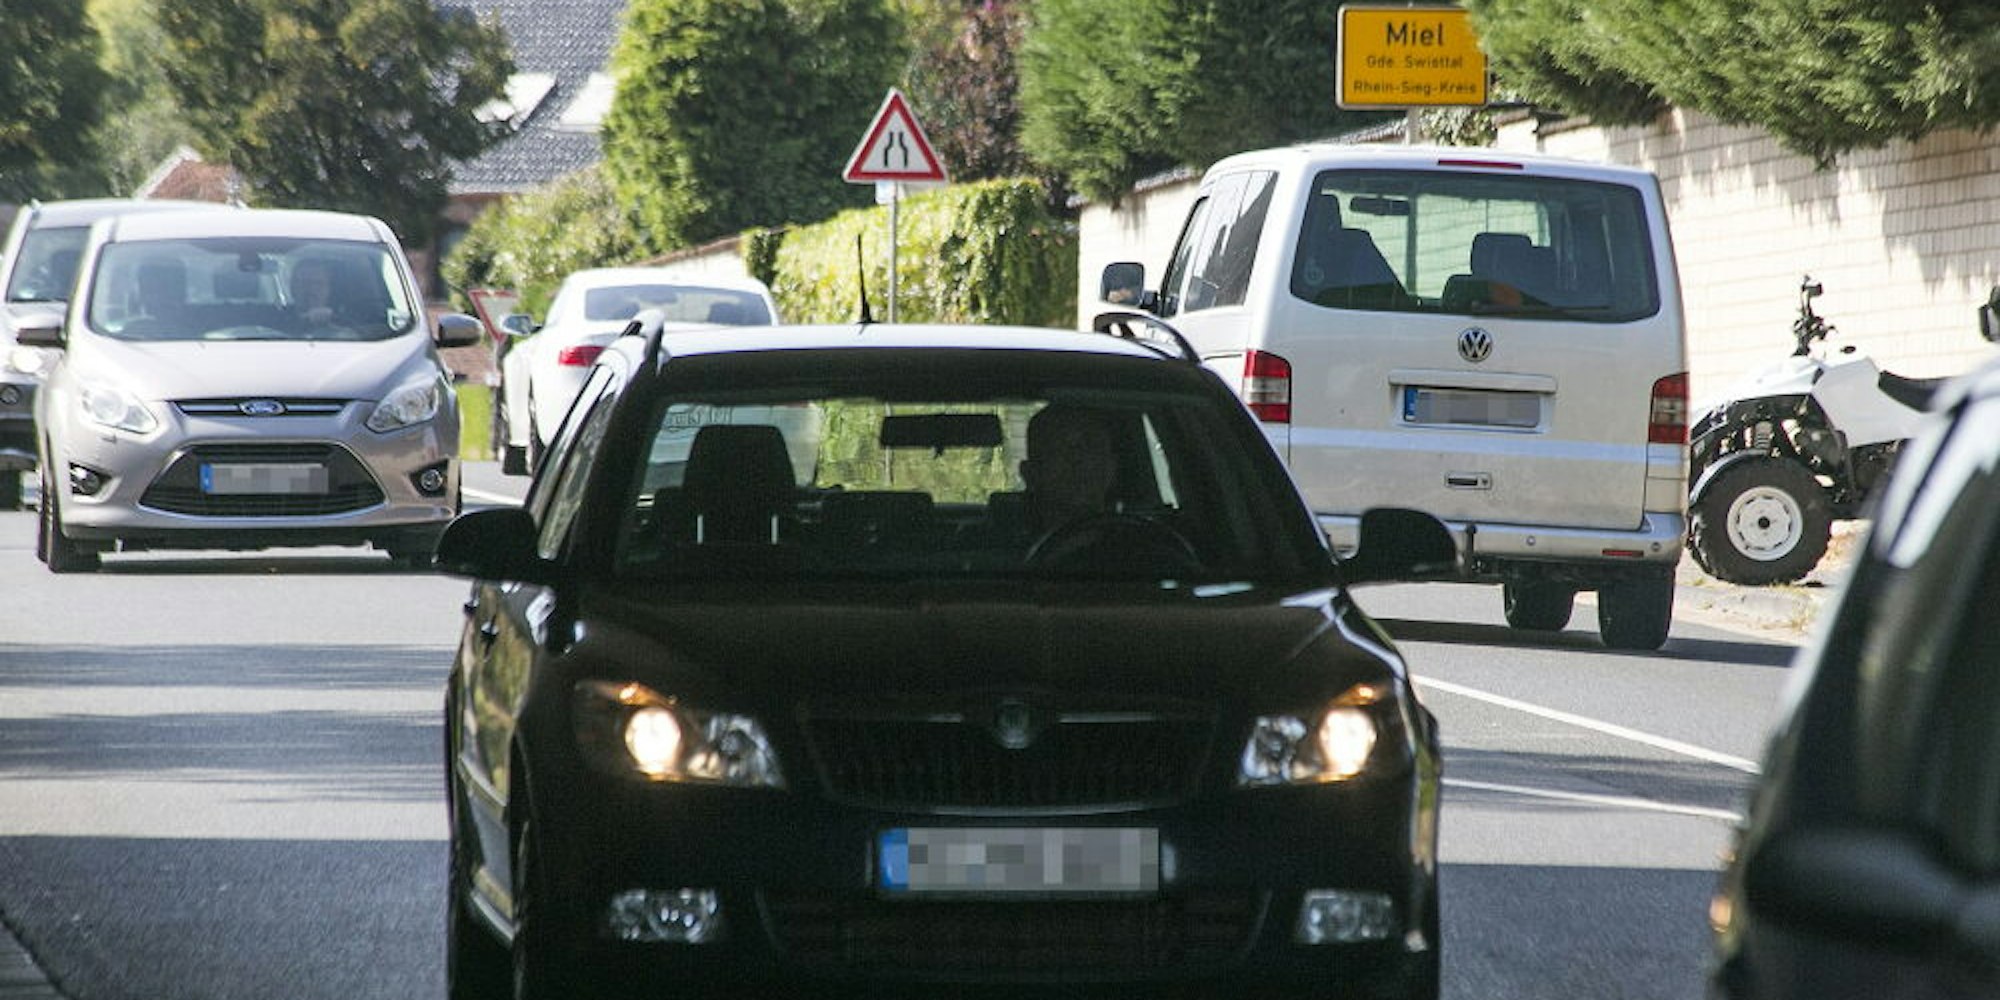 Rund 10.000 Fahrzeuge werden täglich auf der Bonner Straße in Miel gezählt.